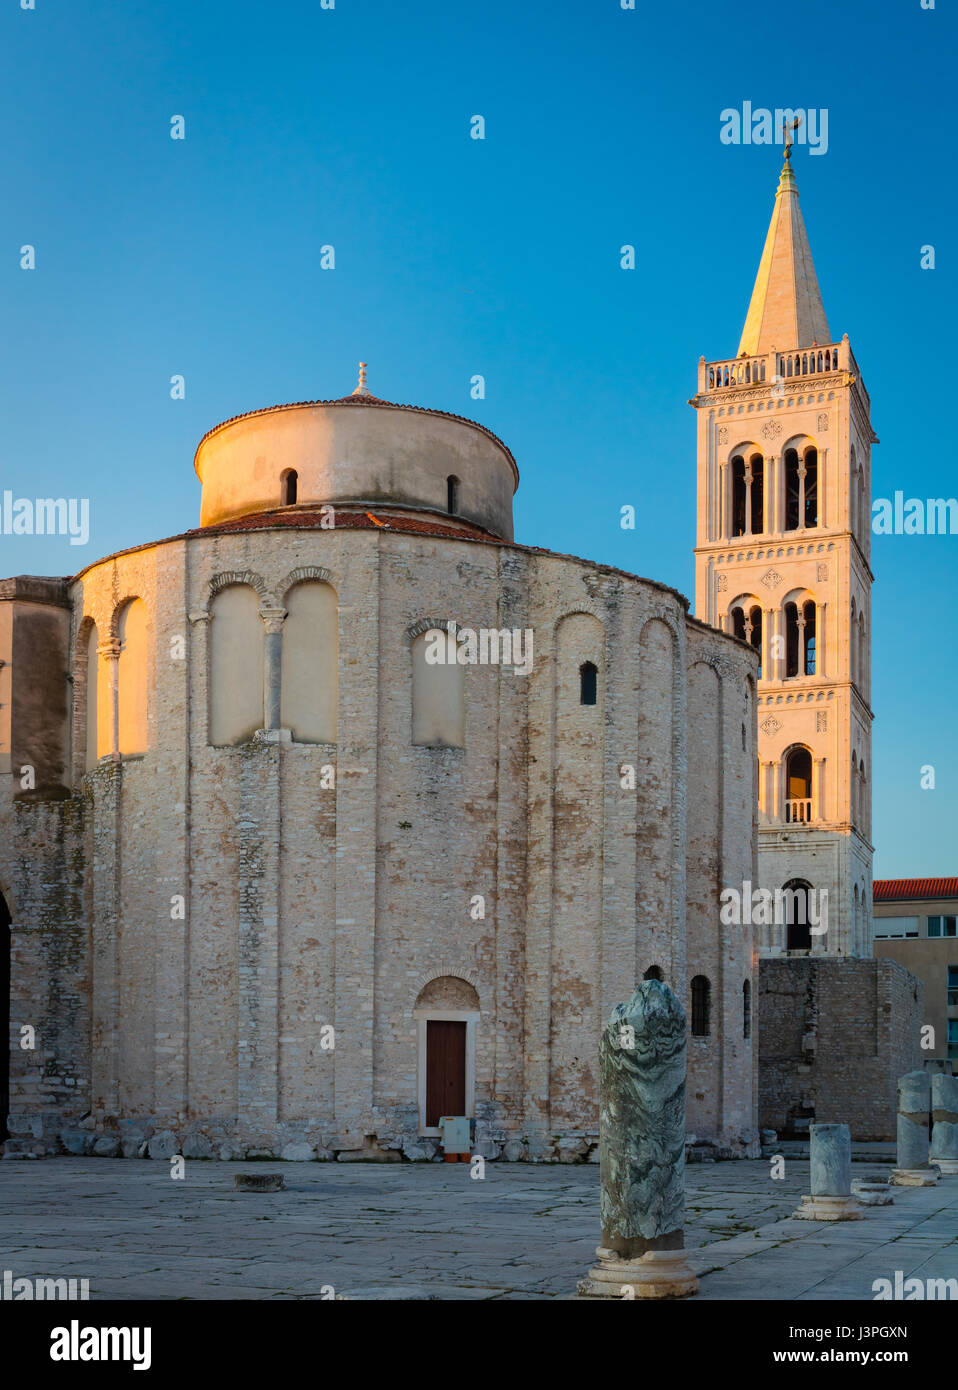 Die Kirche St. Donatus ist eine Kirche in Zadar, Kroatien. Der Name bezieht sich auf Donatus von Zadar, der Bau dieser Kirche im 9. begann Stockfoto